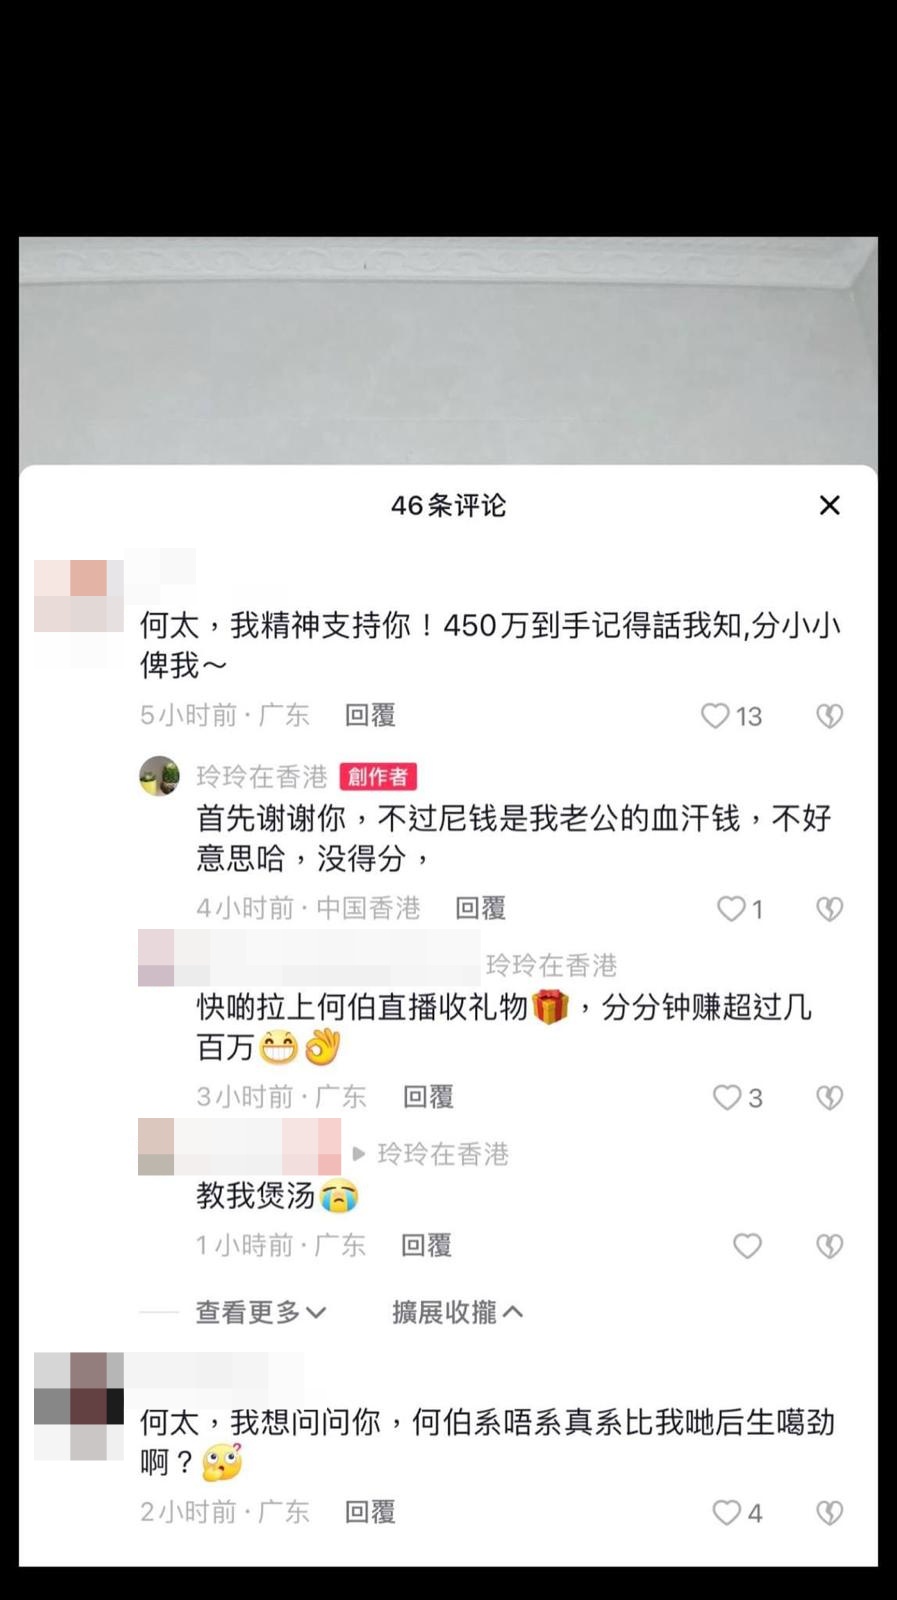 疑似新何太以个人小红书帐号「玲玲在香港」回覆网民。